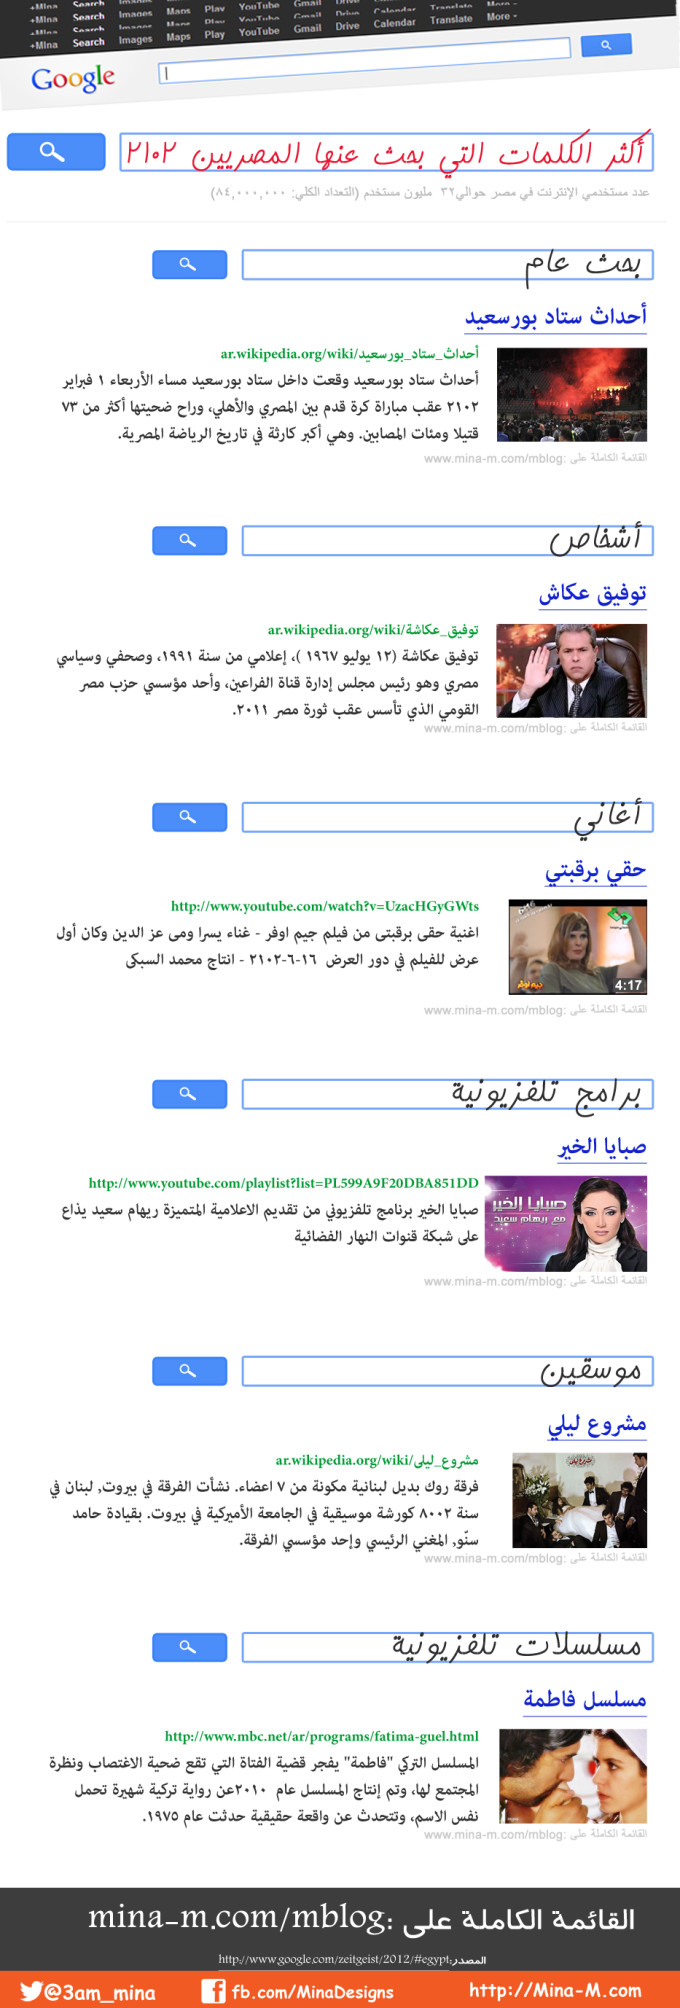 Egypt-search-google-2012